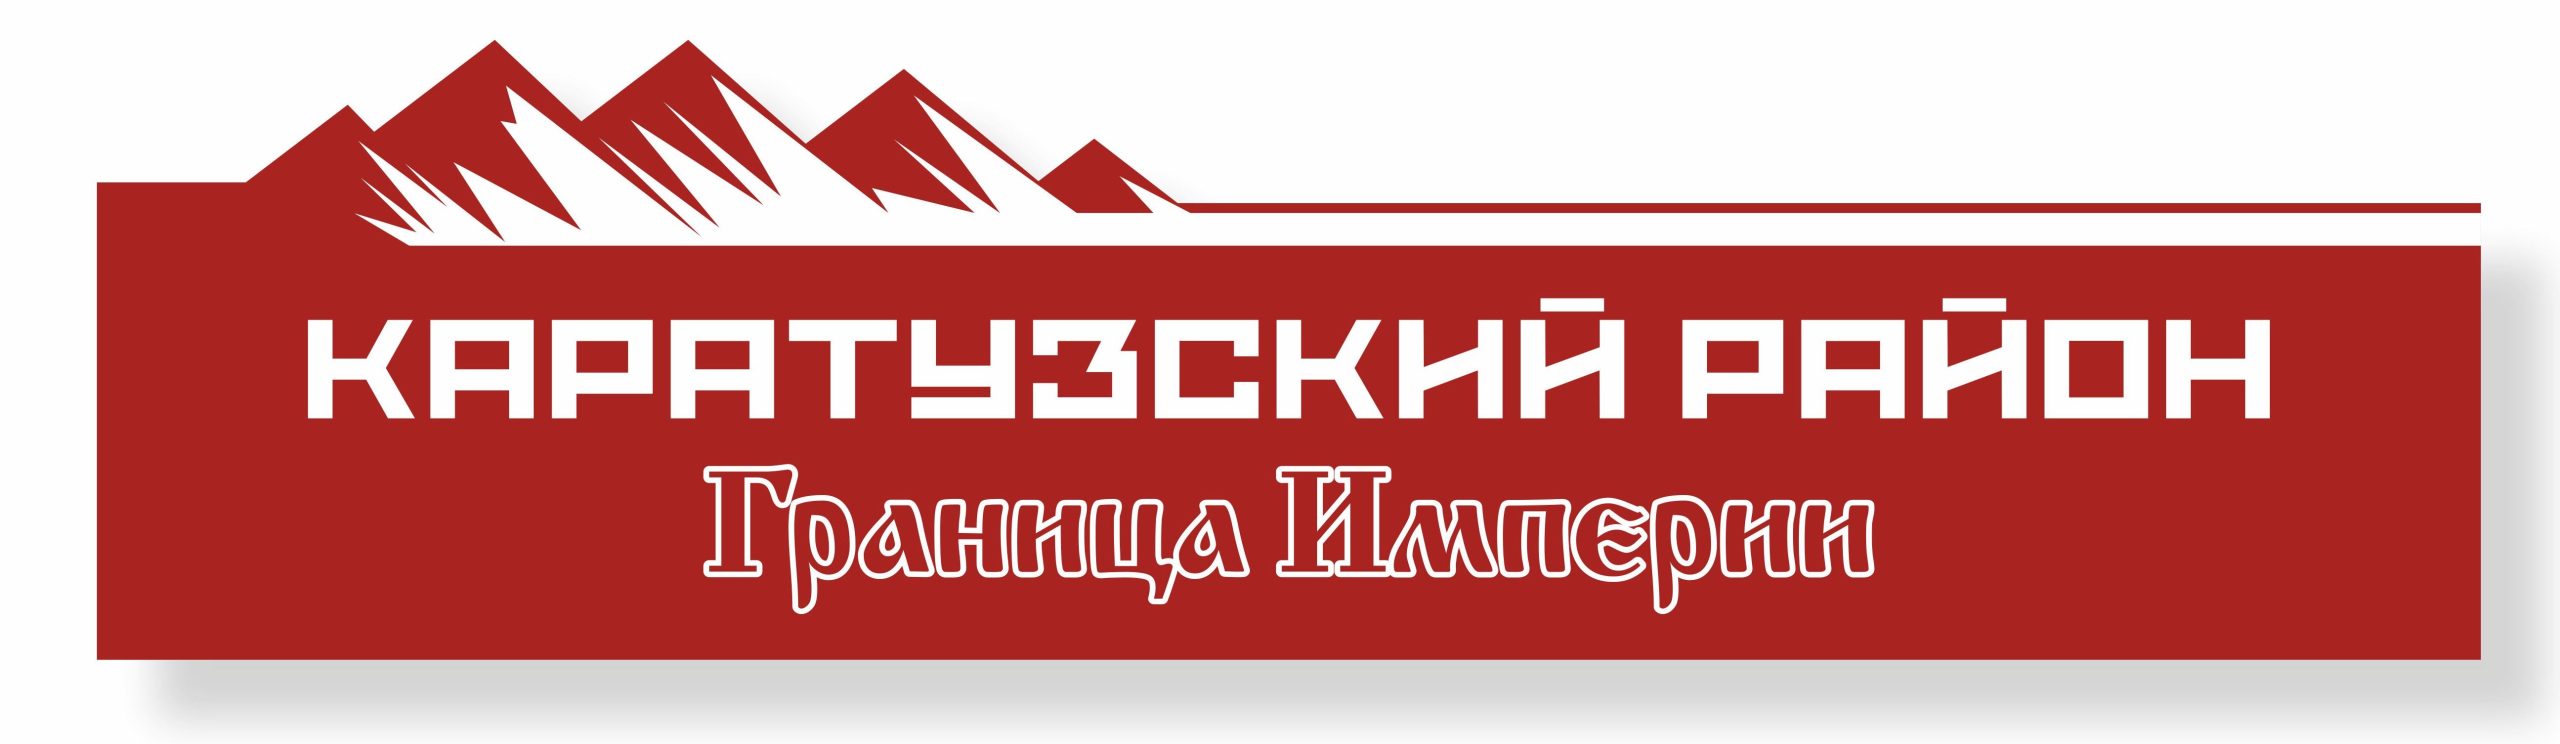 Официальный сайт МБУК «Каратузский районный краеведческий музей»